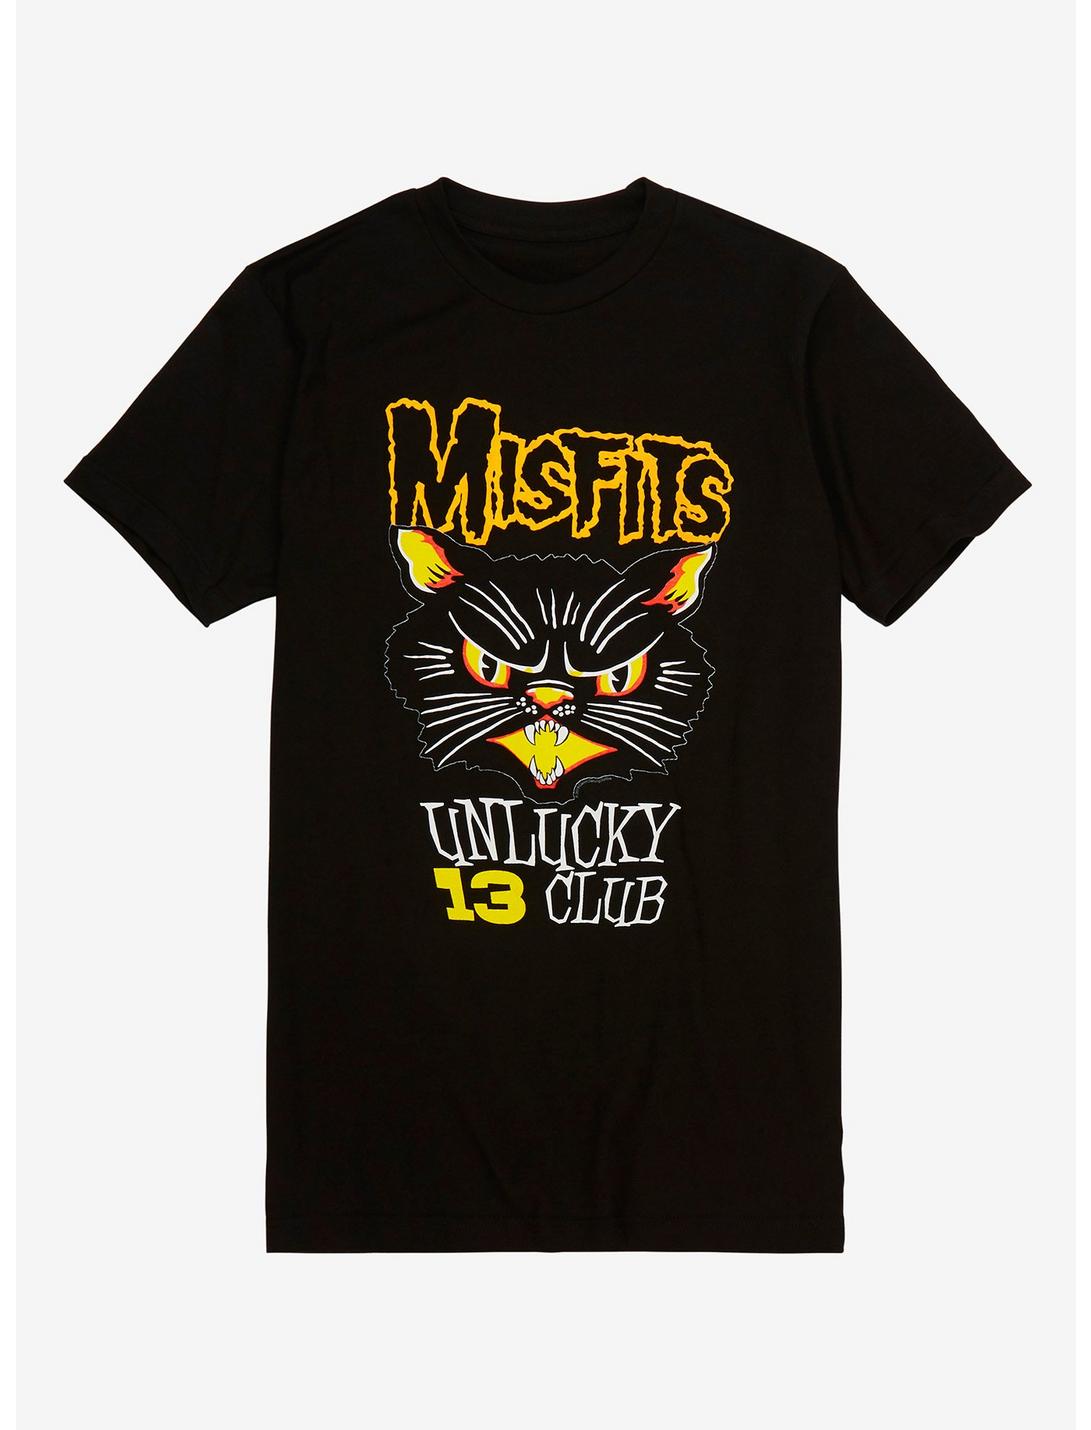 Misfits Unlucky 13 Club T-Shirt, BLACK, hi-res